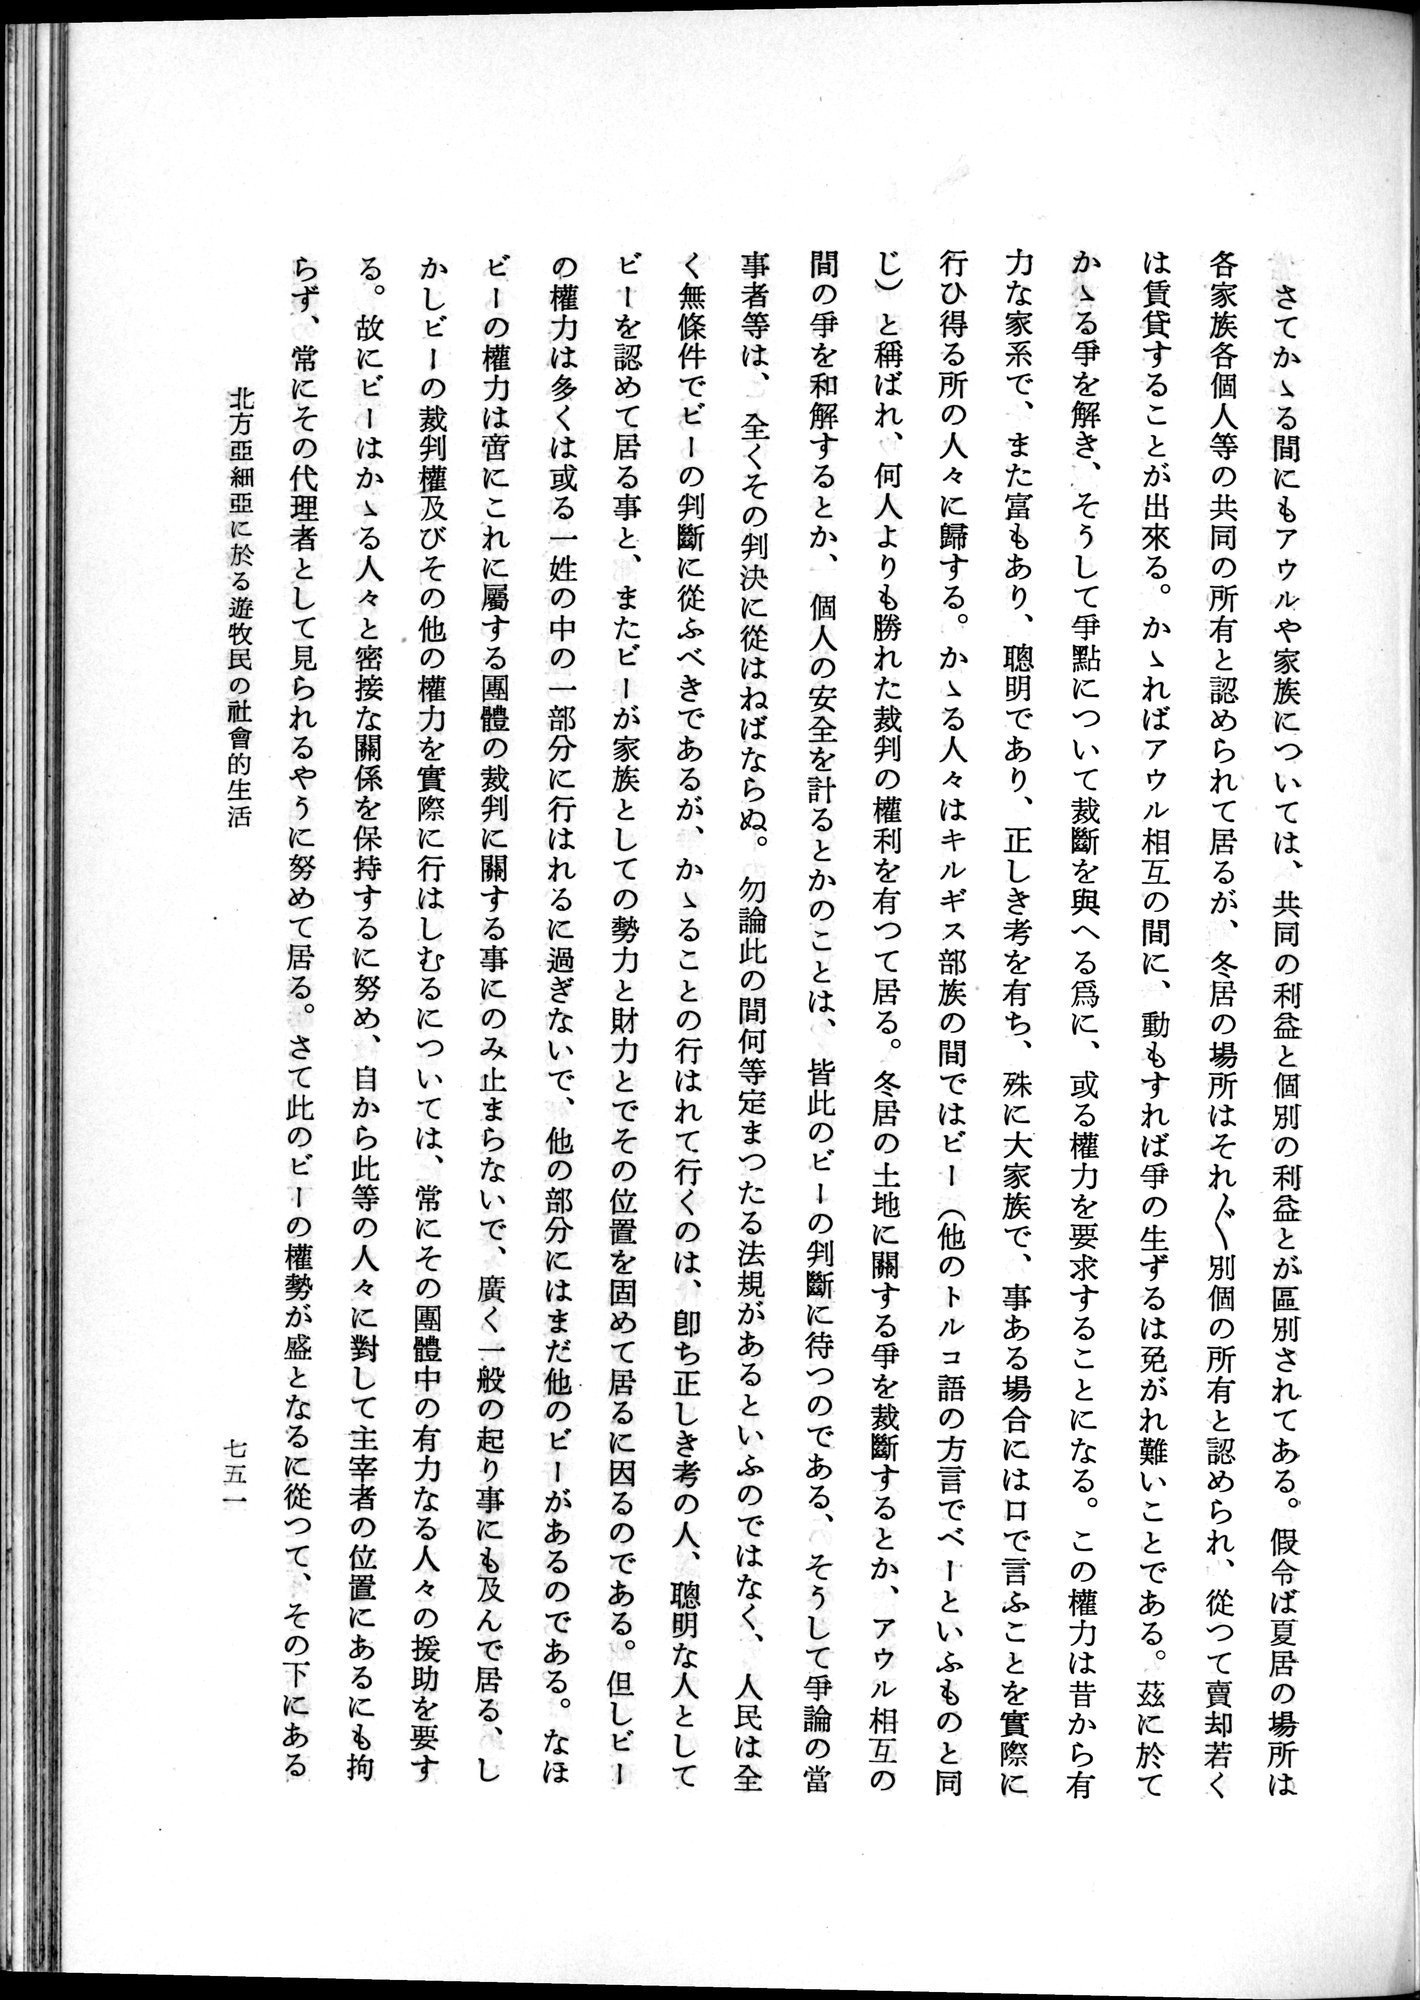 羽田博士史学論文集 : vol.1 / 789 ページ（白黒高解像度画像）